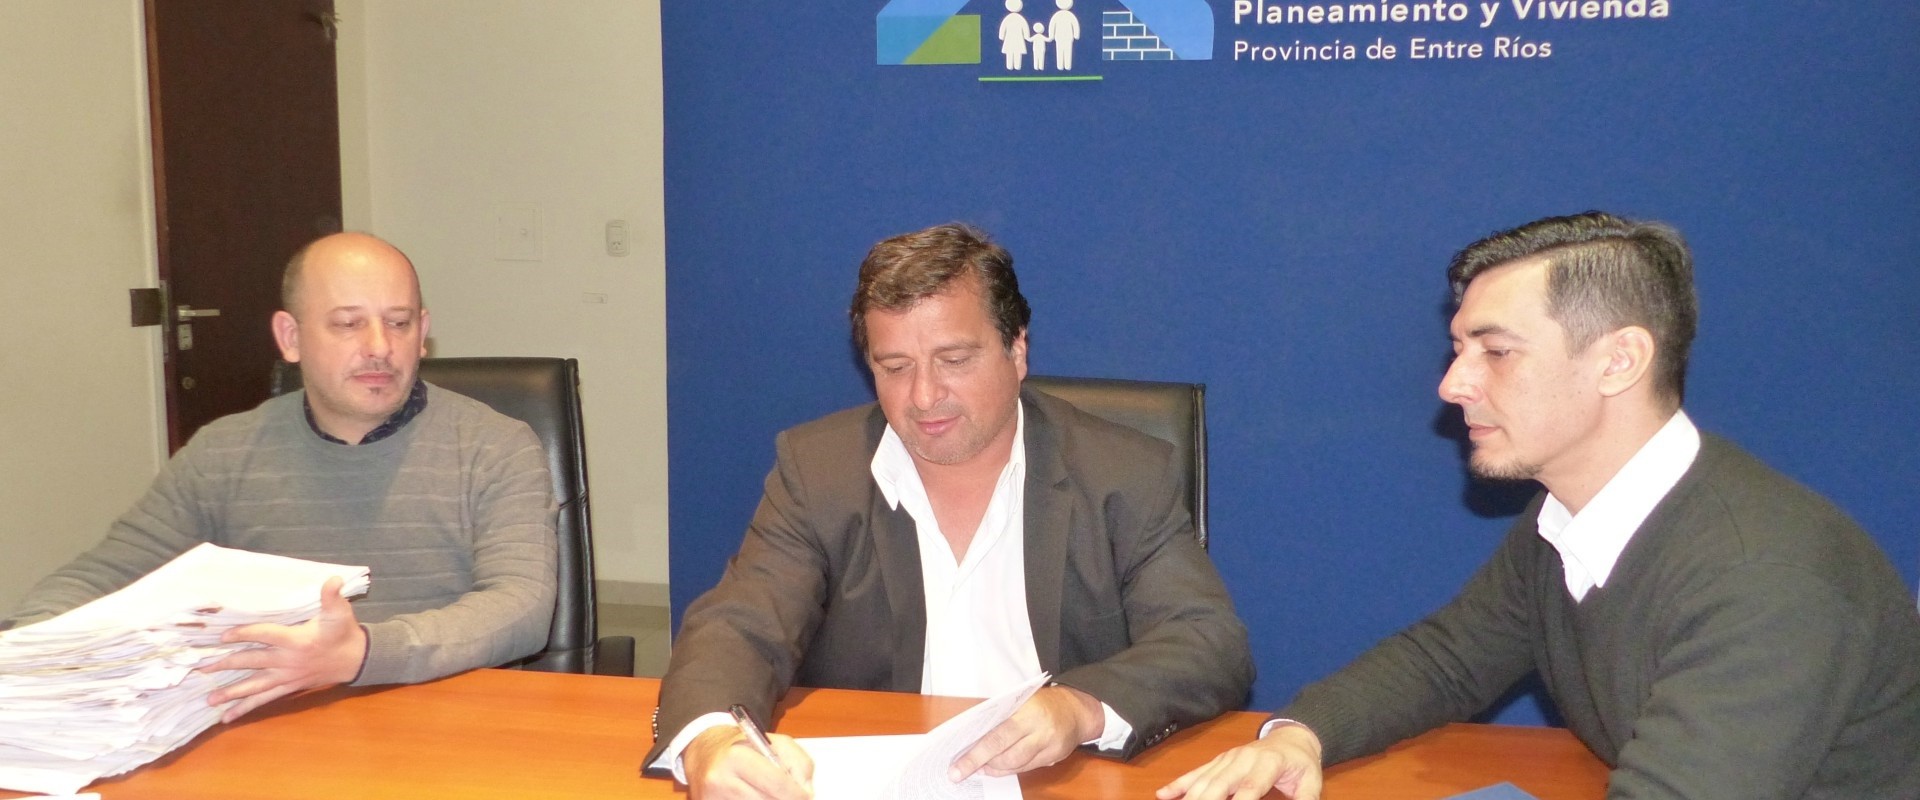 Construirán 10 viviendas en Colonia Crespo financiadas con recursos provinciales